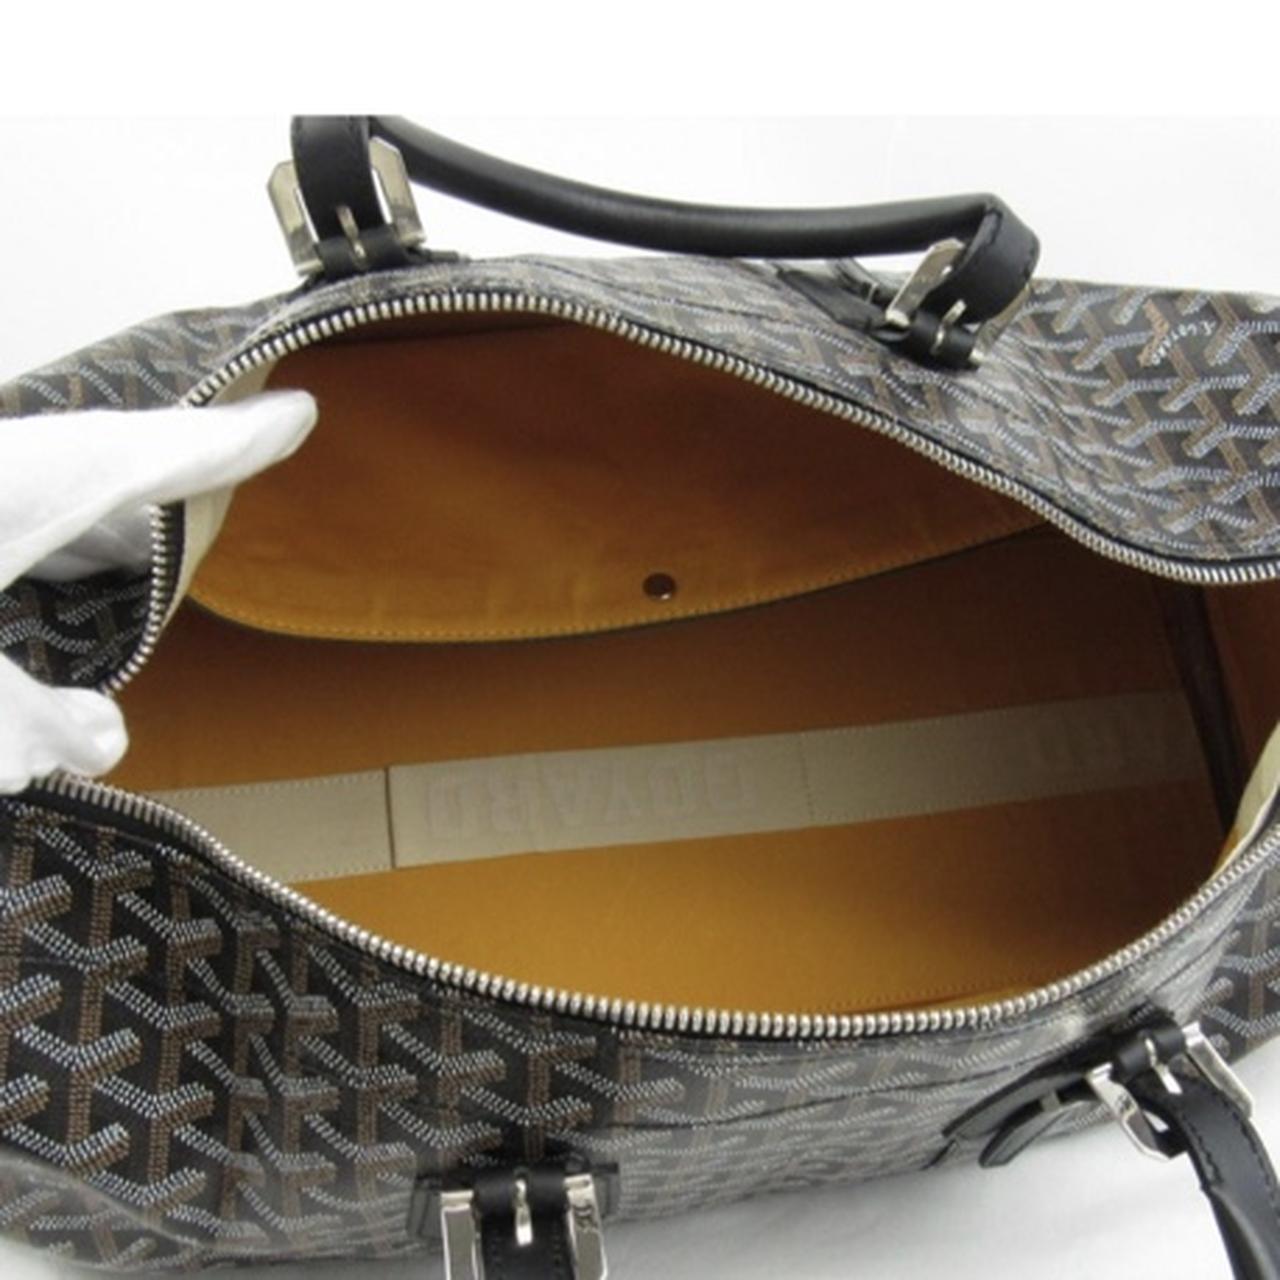 Goyard Black Bag Set in Airport Residential Area - Bags,  𝗔𝗨𝗧𝗢-𝗧𝗥𝗨𝗦𝗧 𝗚𝗛𝗔𝗡𝗔 𝗟𝗜𝗠𝗜𝗧𝗘𝗗 | Jiji.com.gh